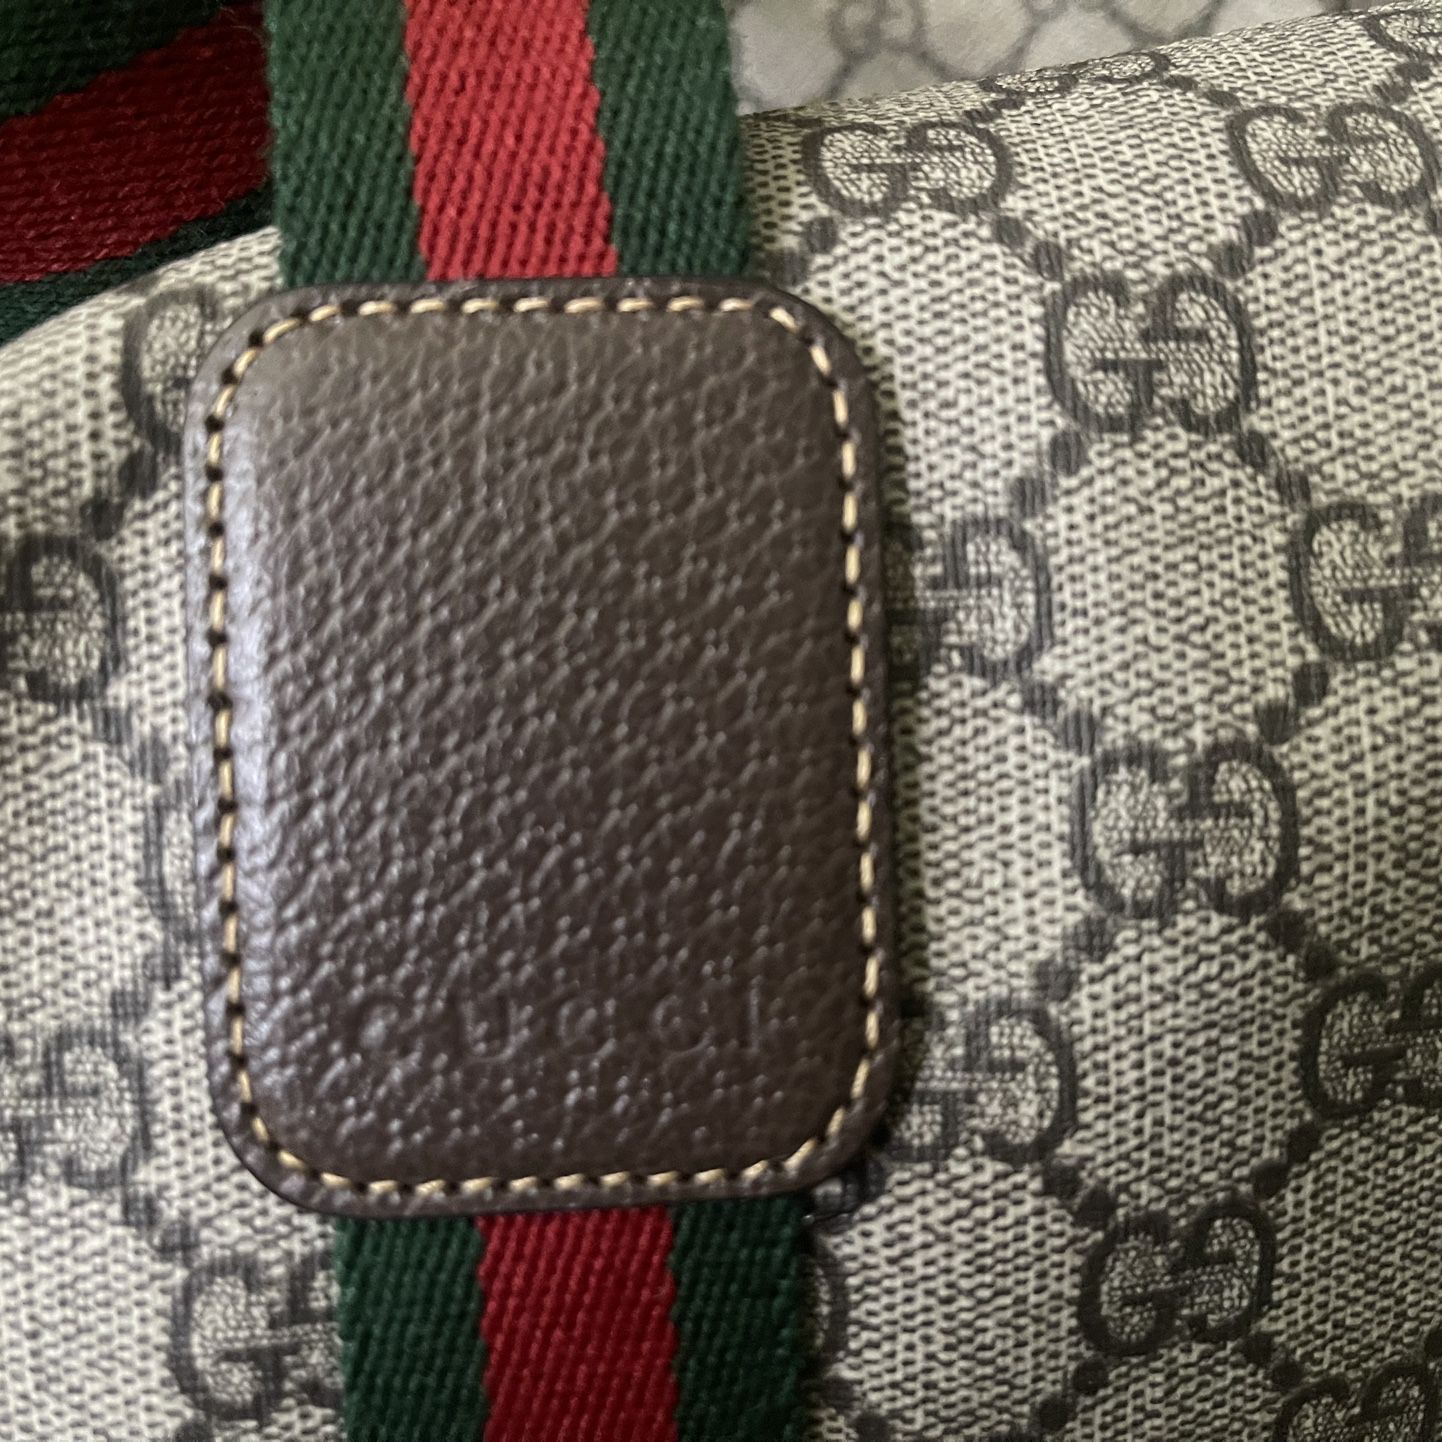 Gucci Foldable Duffel Bag 